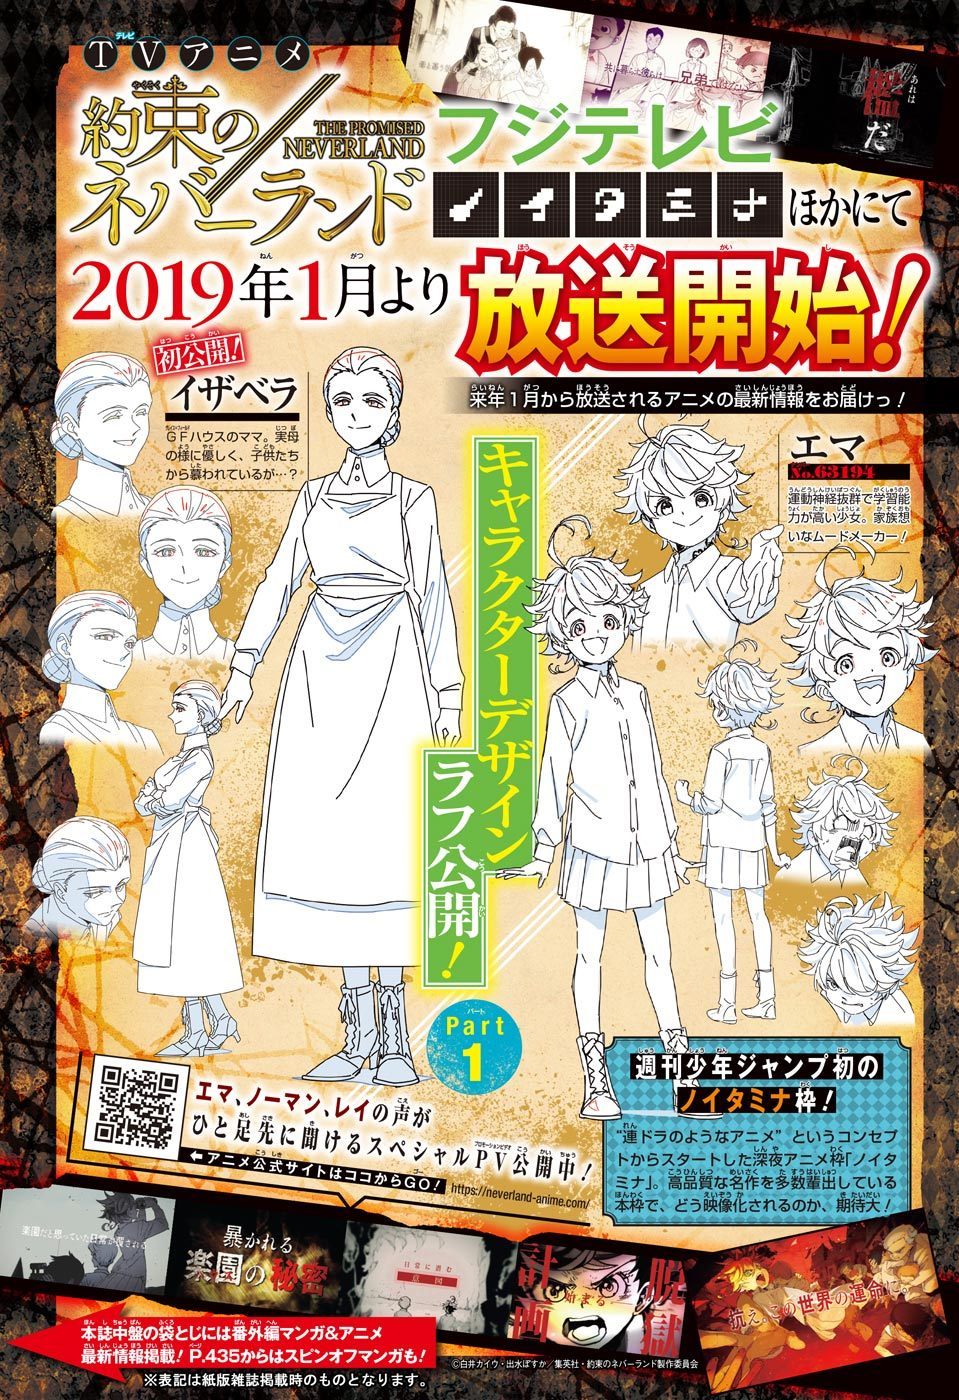 âThe Promised Neverlandâ anime character designs for Isabella and Emma. Its broadcast will premiere January 2019 on Fuji TVâs Noitamina programming block.